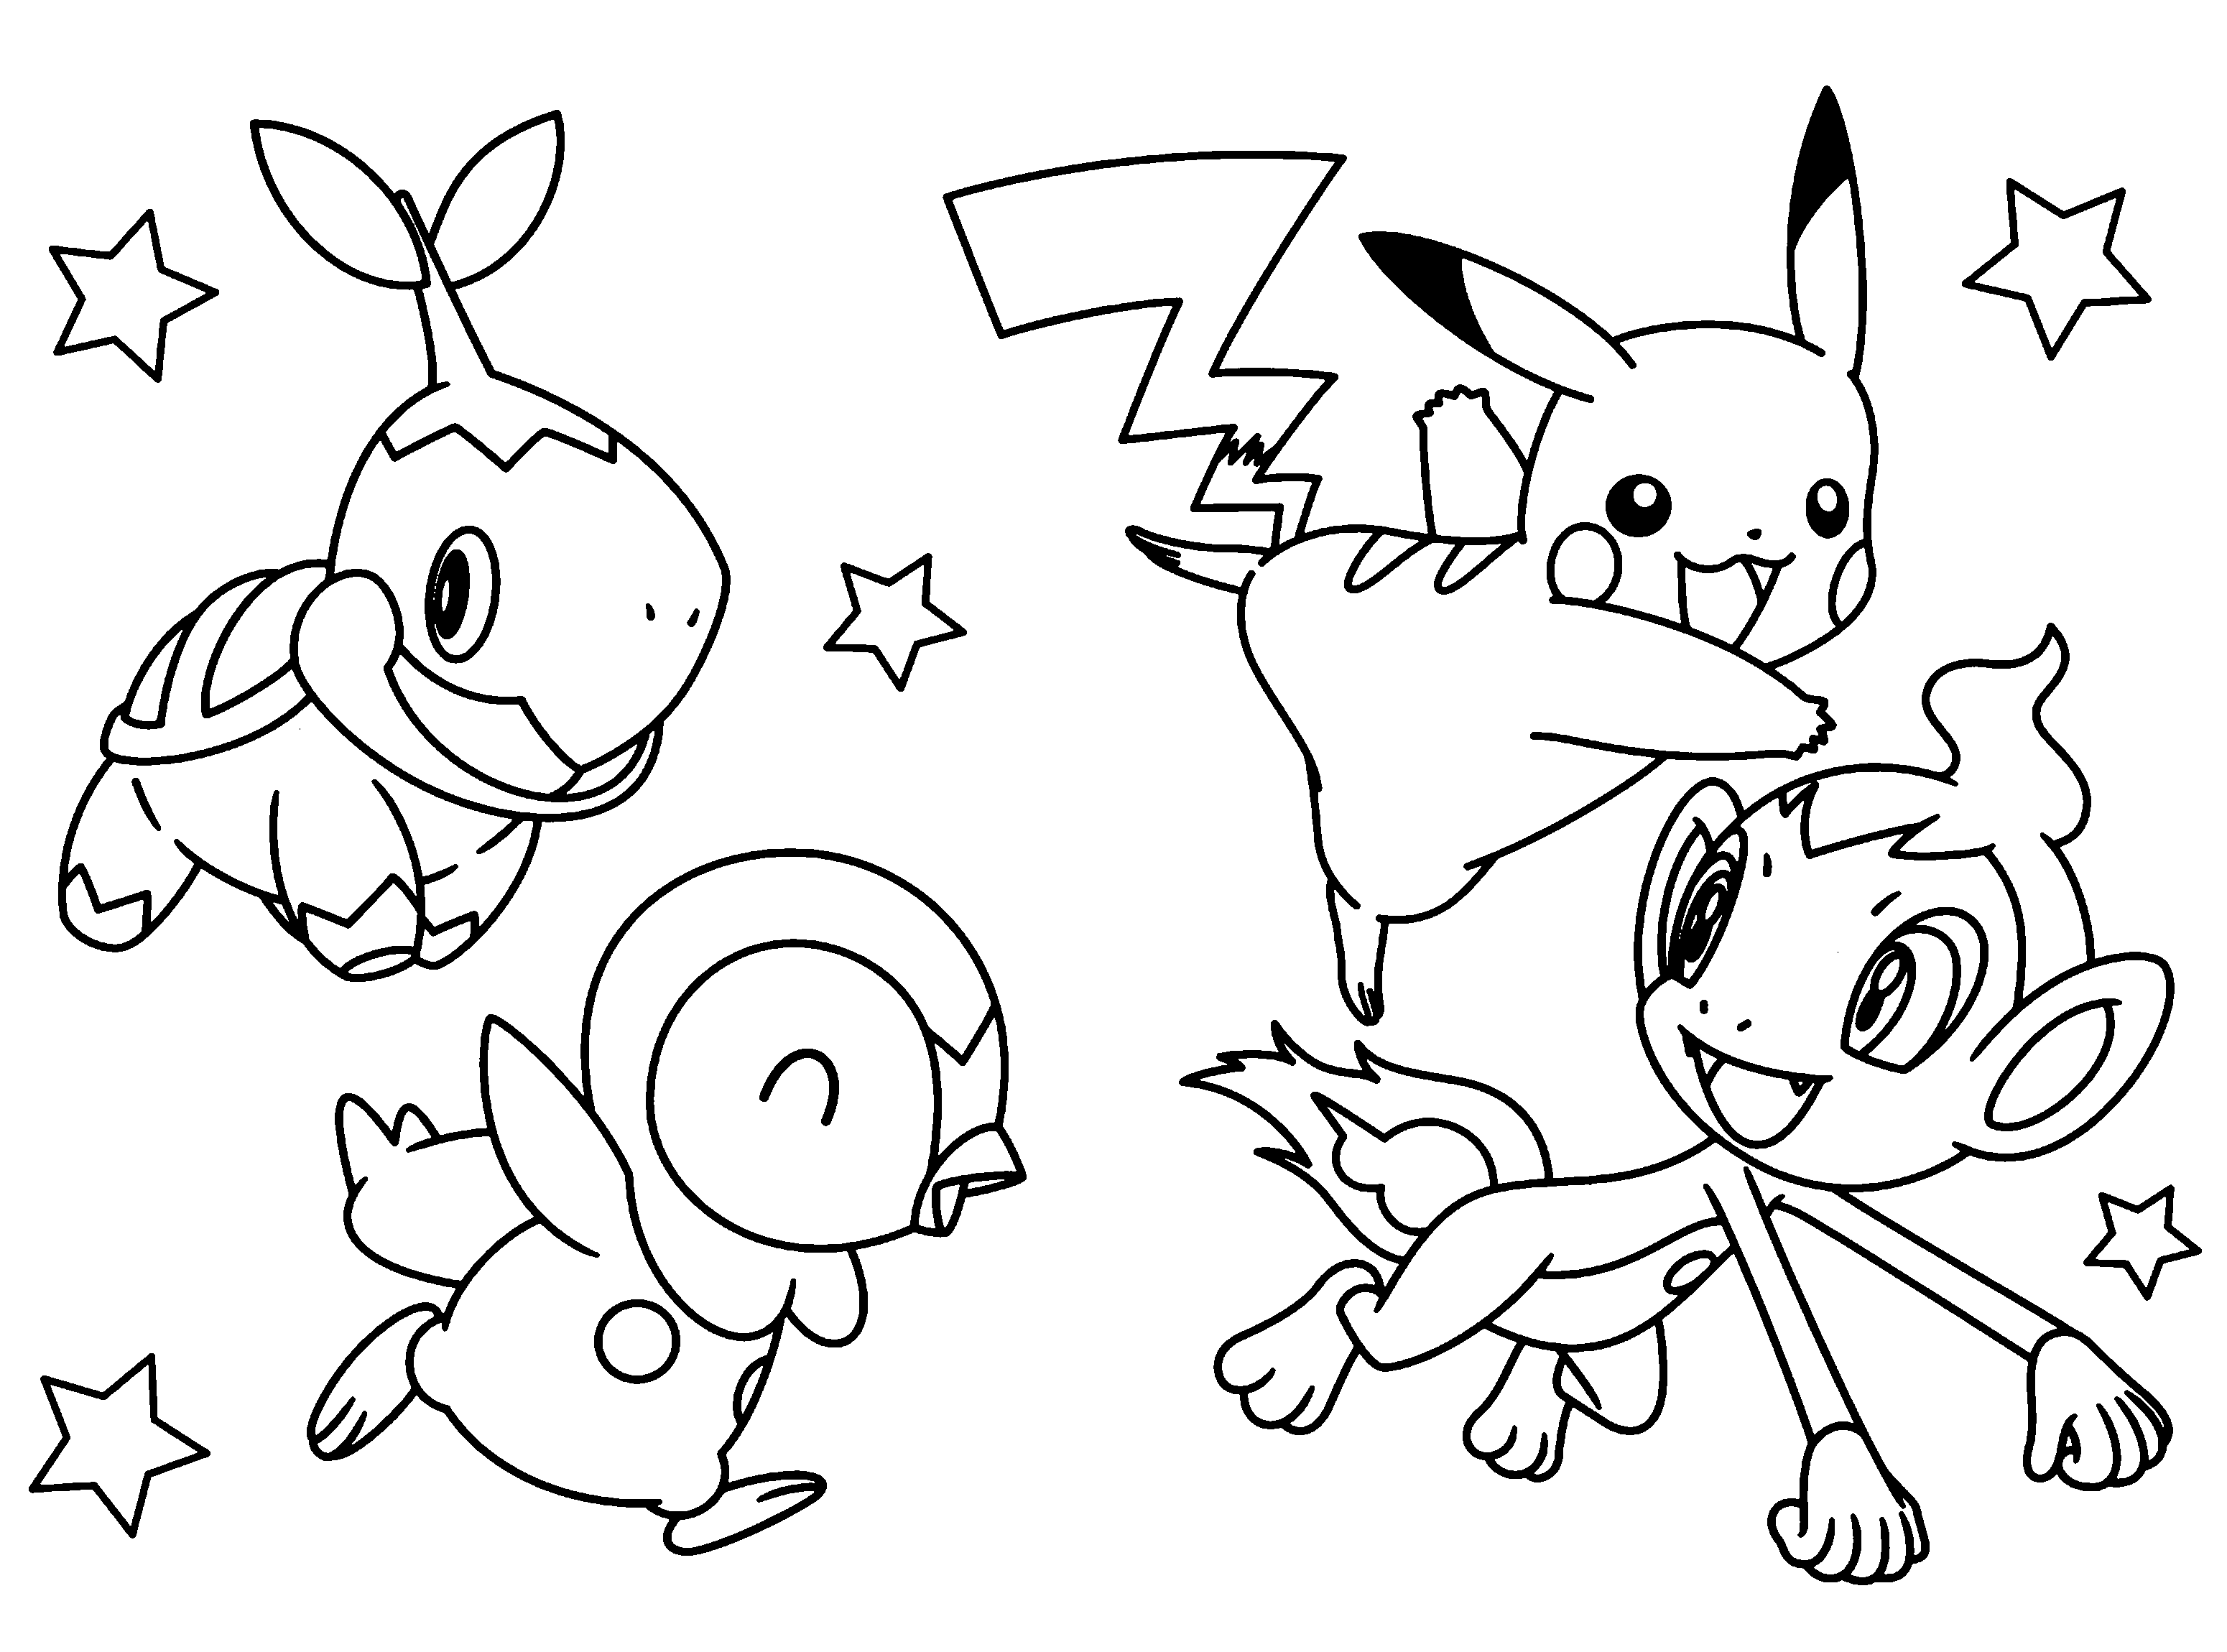 Desenhos do Pokemon para imprimir e colorir  Colorear pokemon, Dibujos  para colorear pokemon, Dibujos